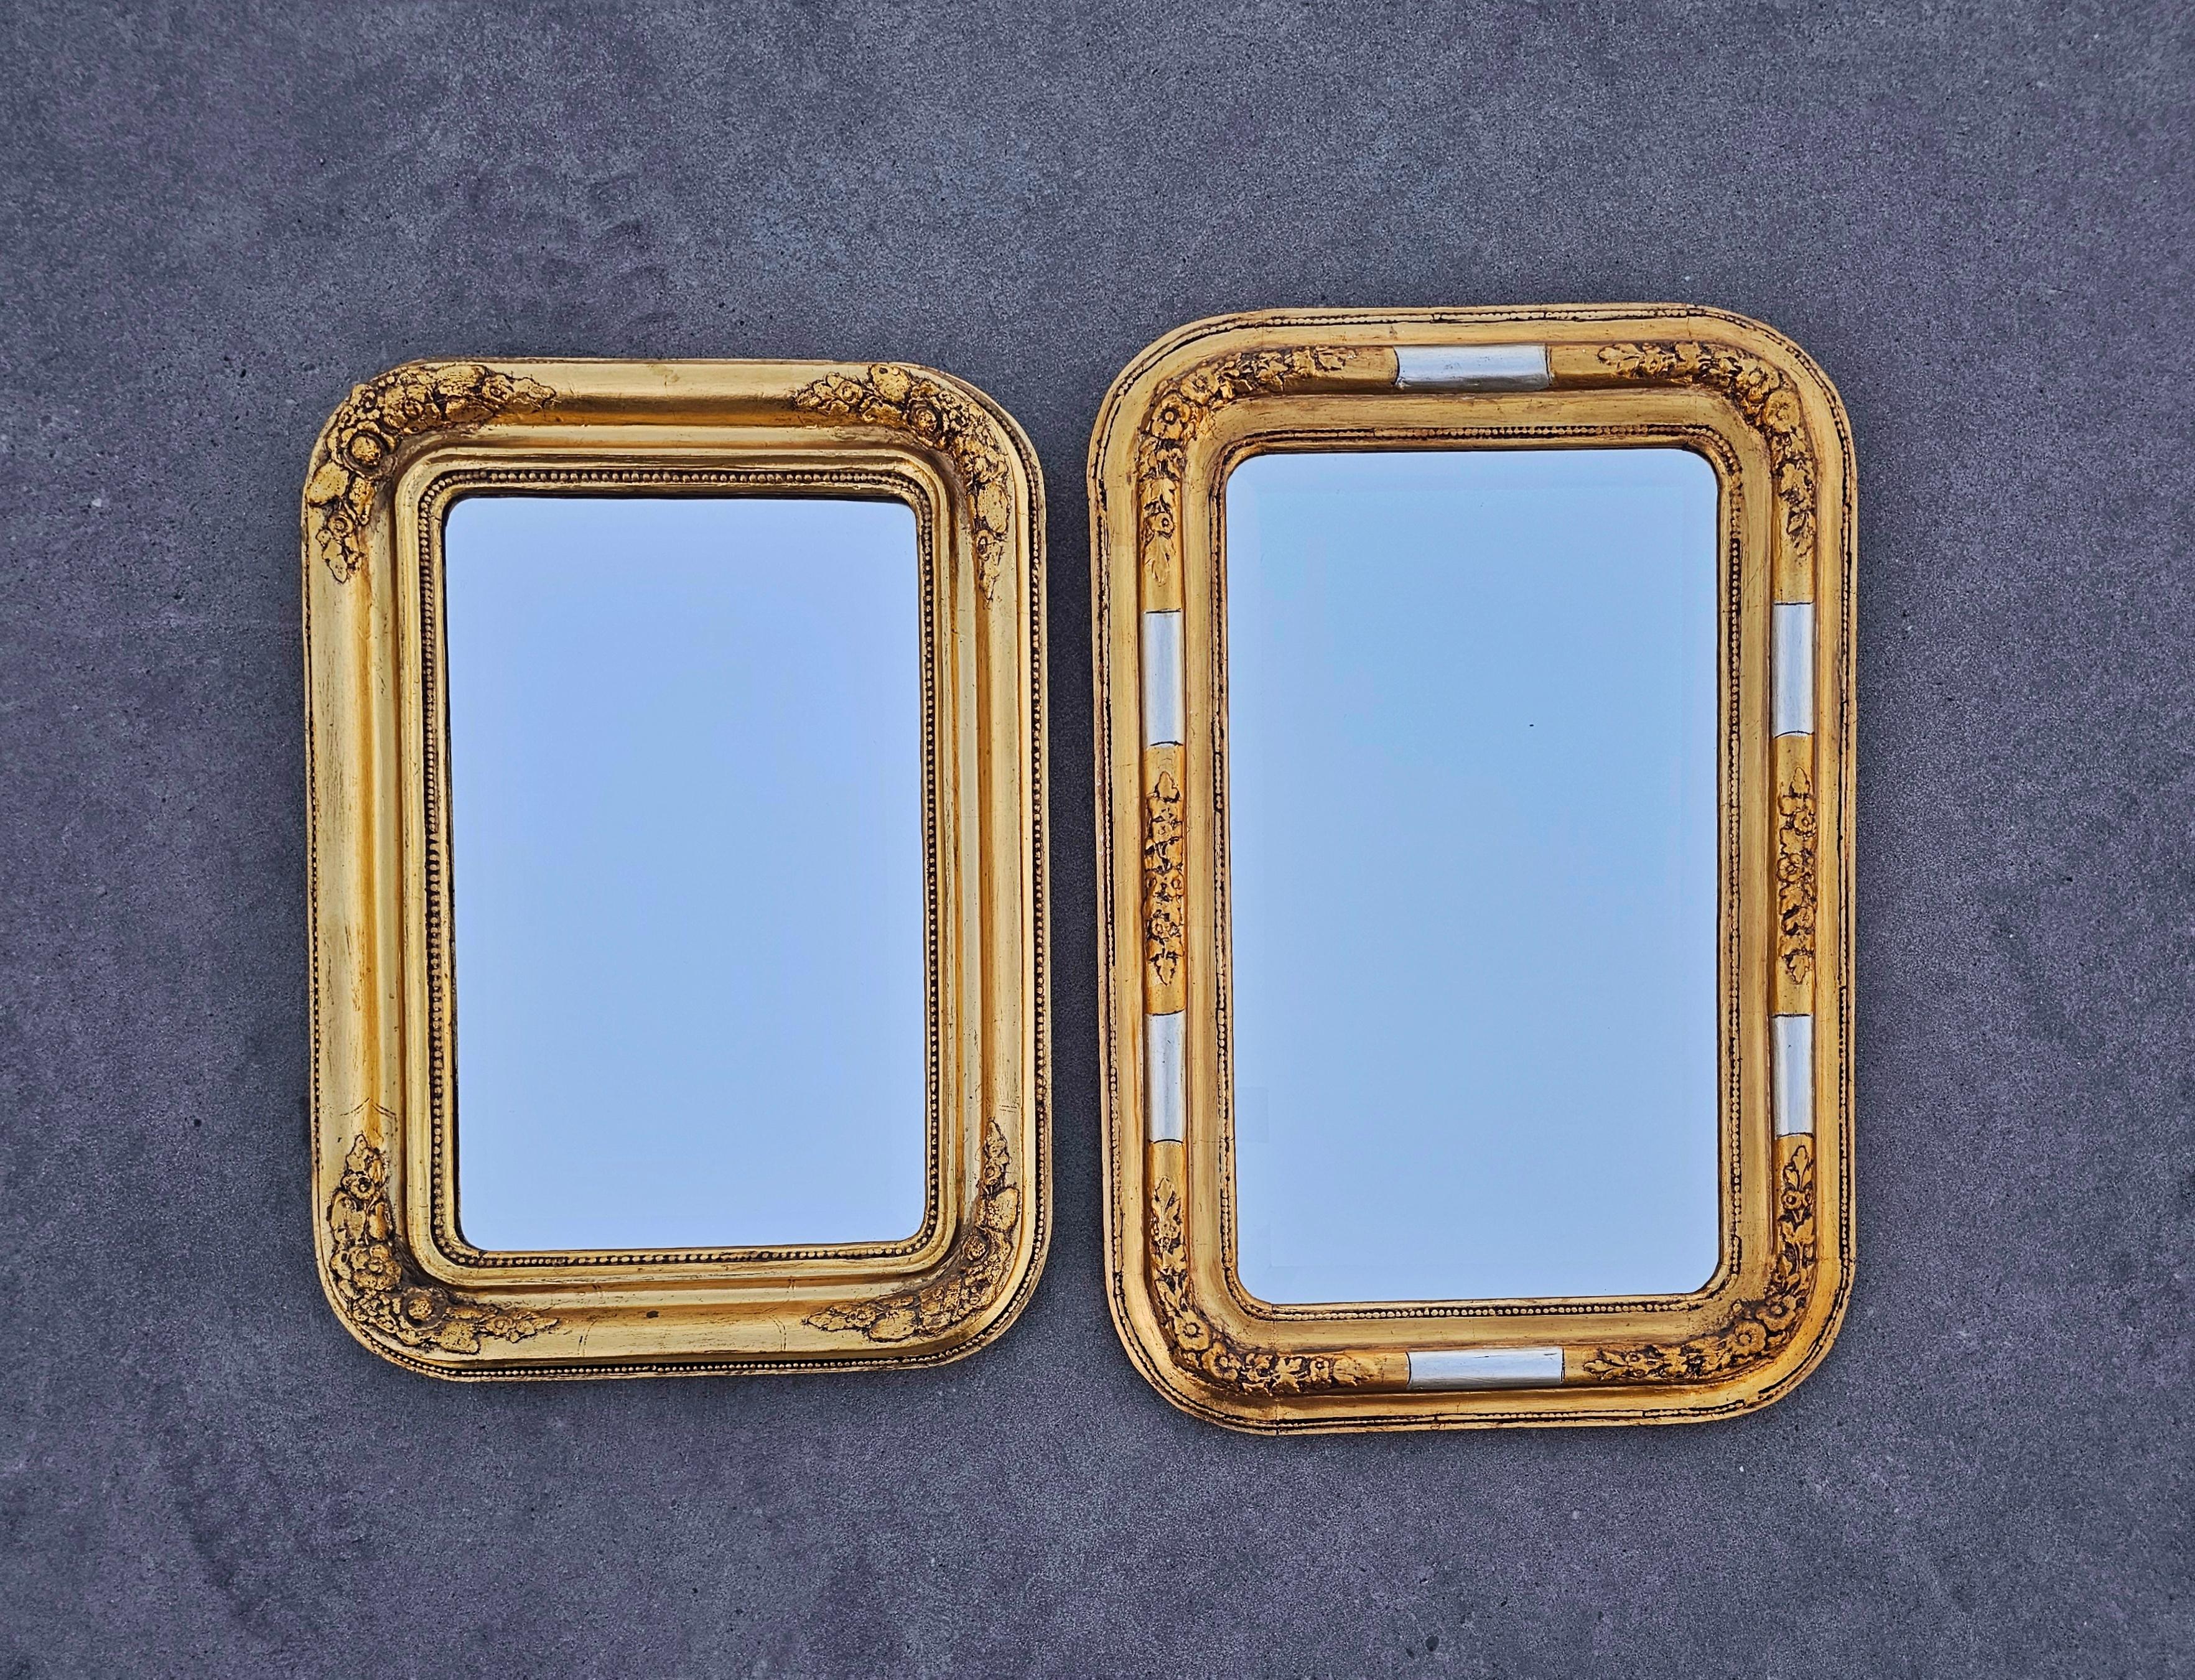 In diesem Angebot finden Sie einen prächtigen, großen und seltenen Biedermeier Spiegel mit vergoldetem Holzrahmen und facettiertem Spiegelglas. Er hat eine rechteckige Form mit abgerundeten Ecken und floralen Schnitzereien. Der Spiegel ist